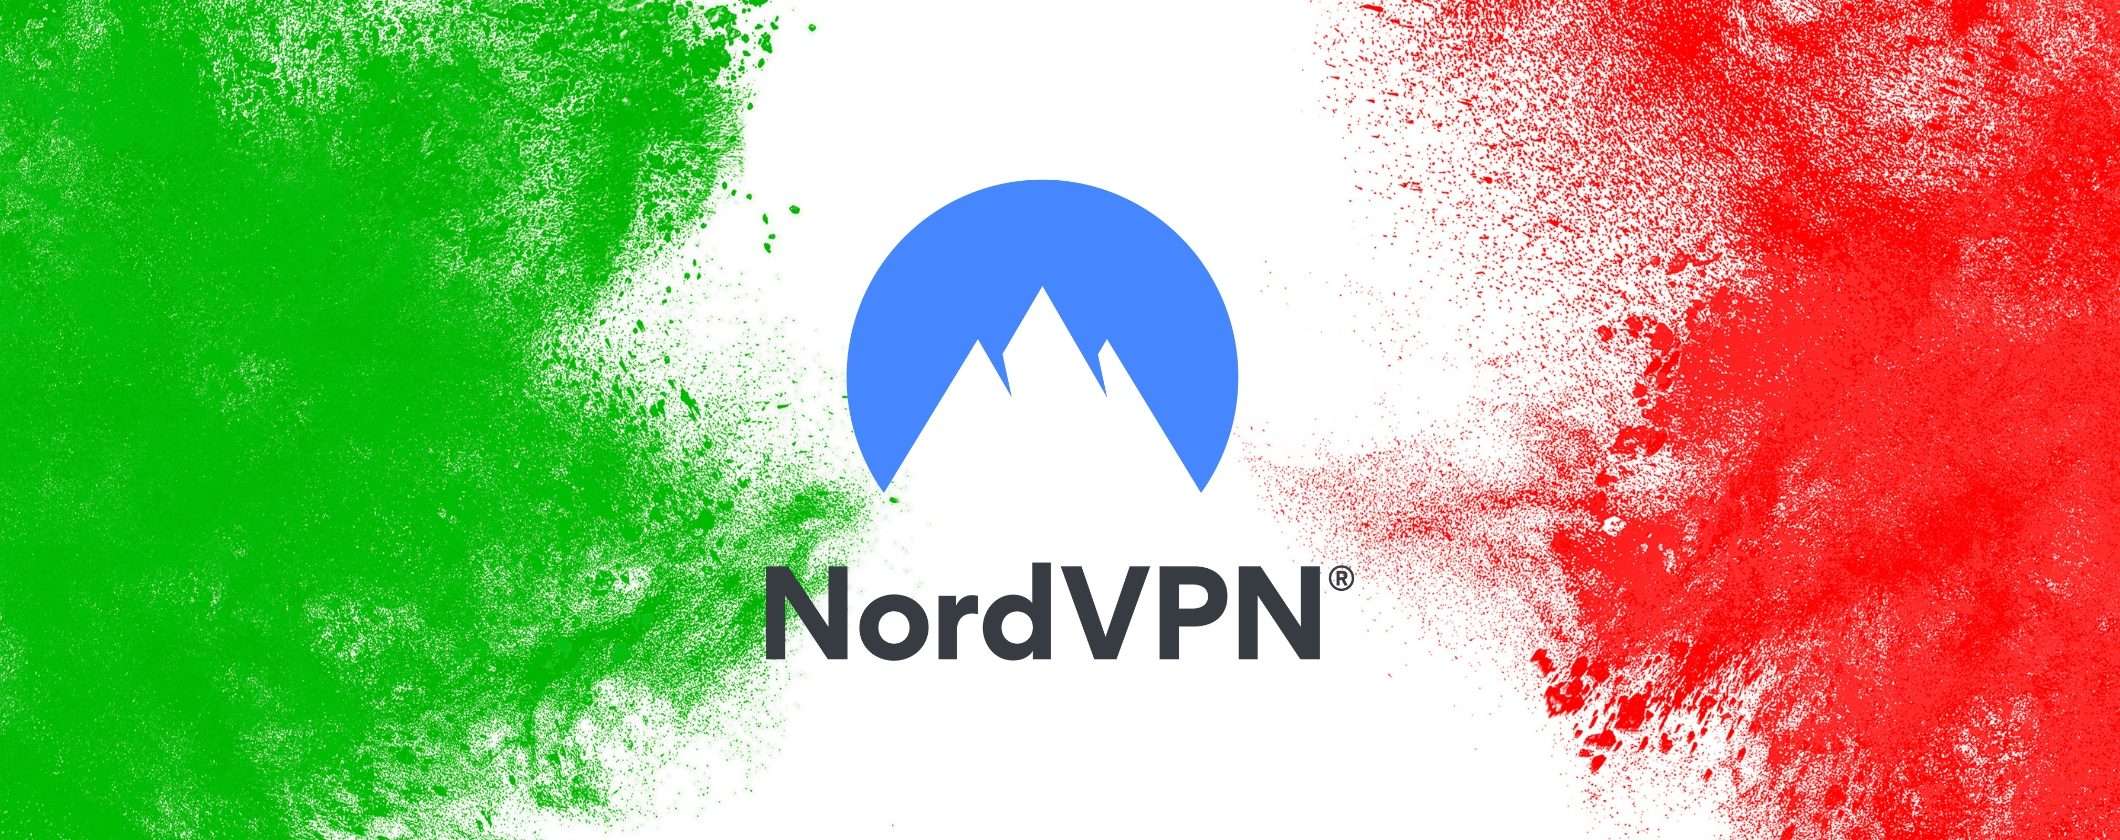 NordVPN si aggiorna per gli utenti italiani con funzioni speciali